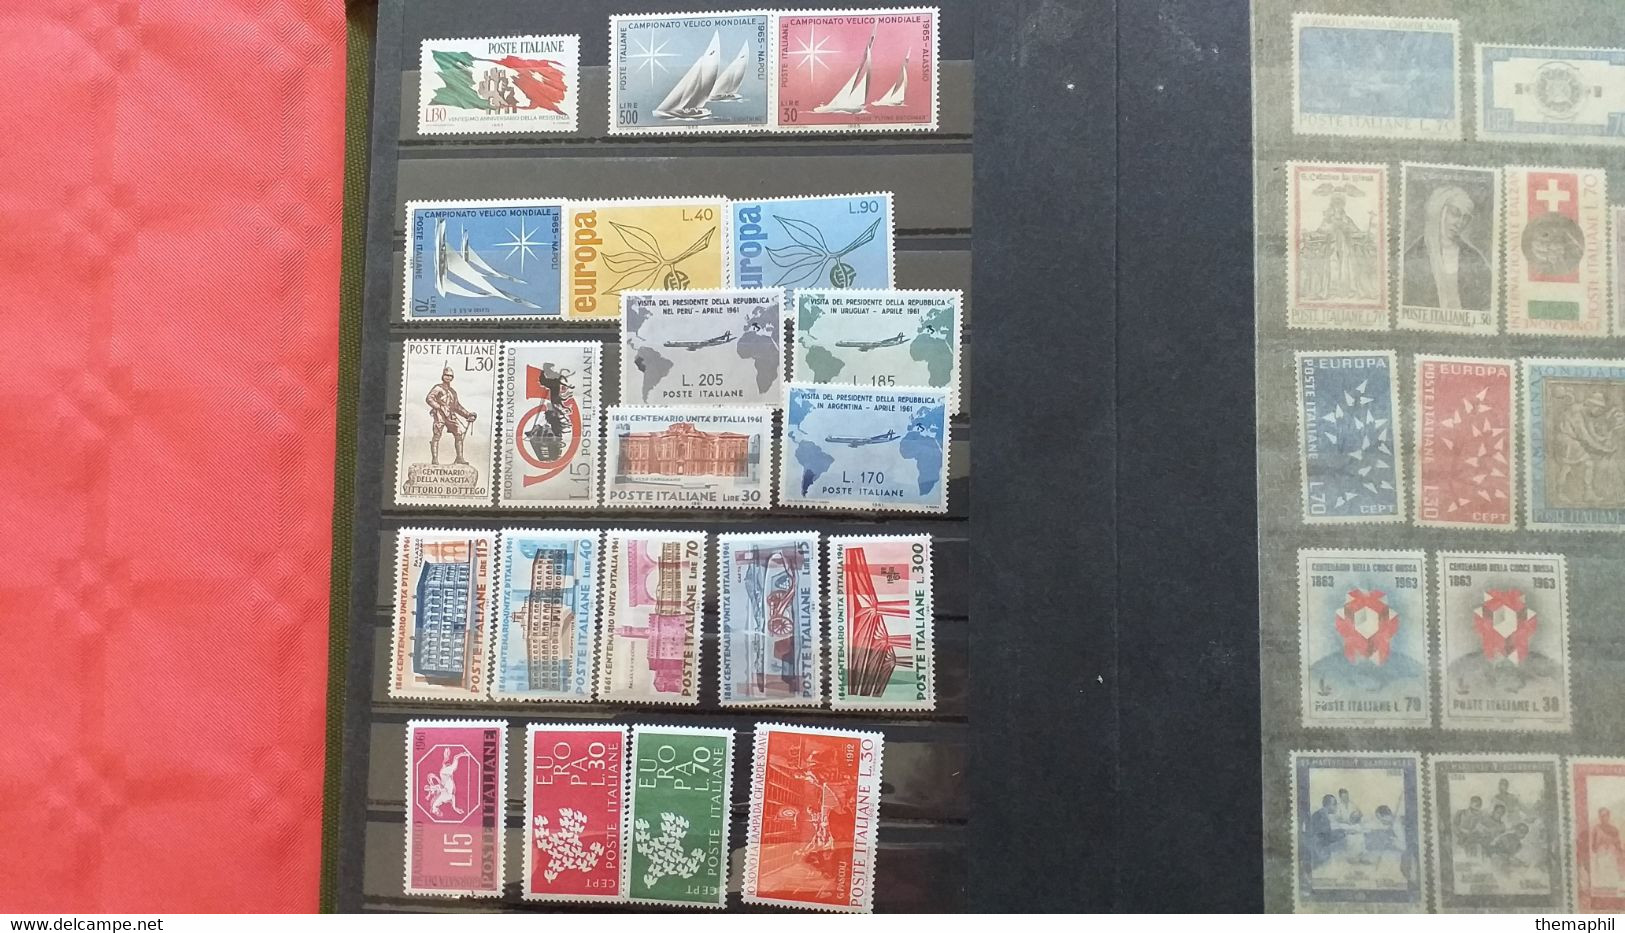 lot n° TH 491 EUROPE et divers pays timbres neufs xx un lot de 2 classeurs